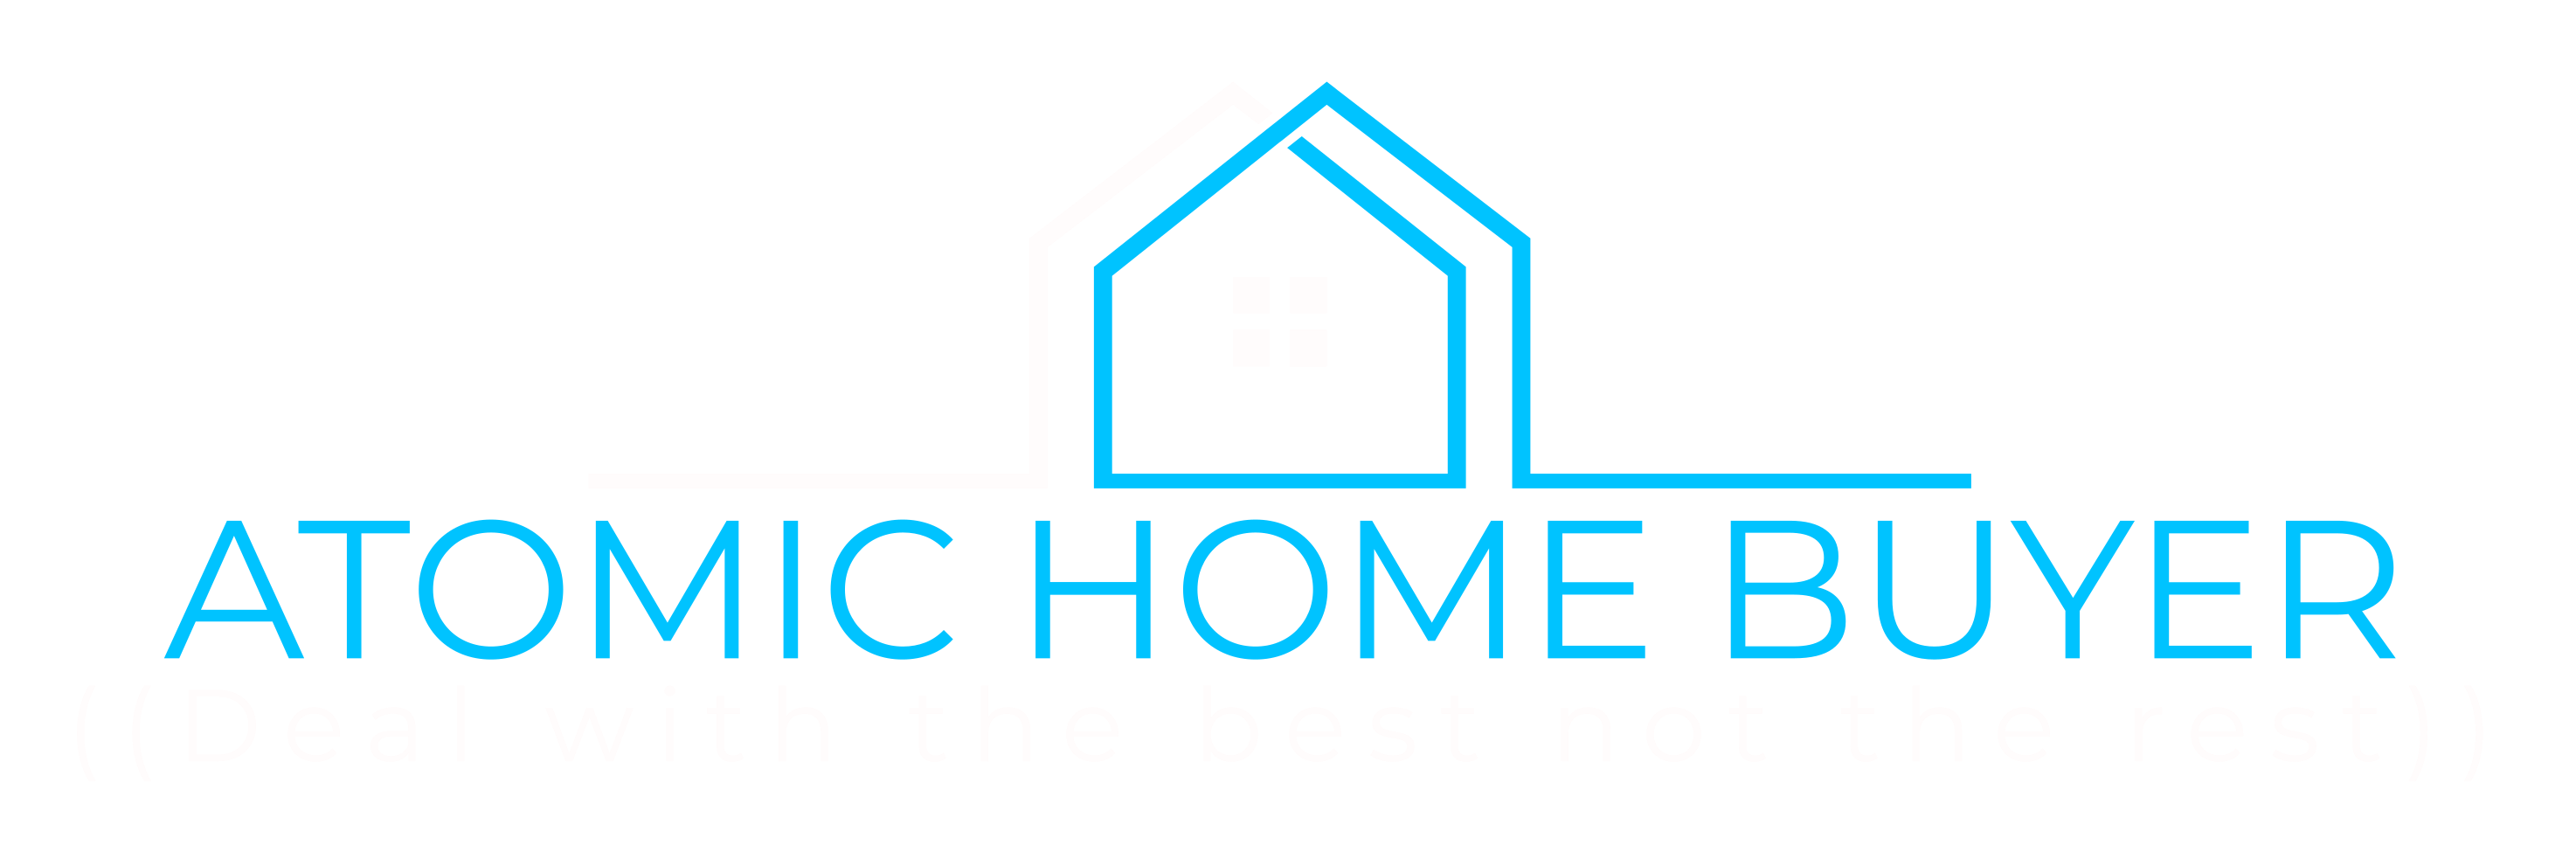 AtomicHomebuyer logo